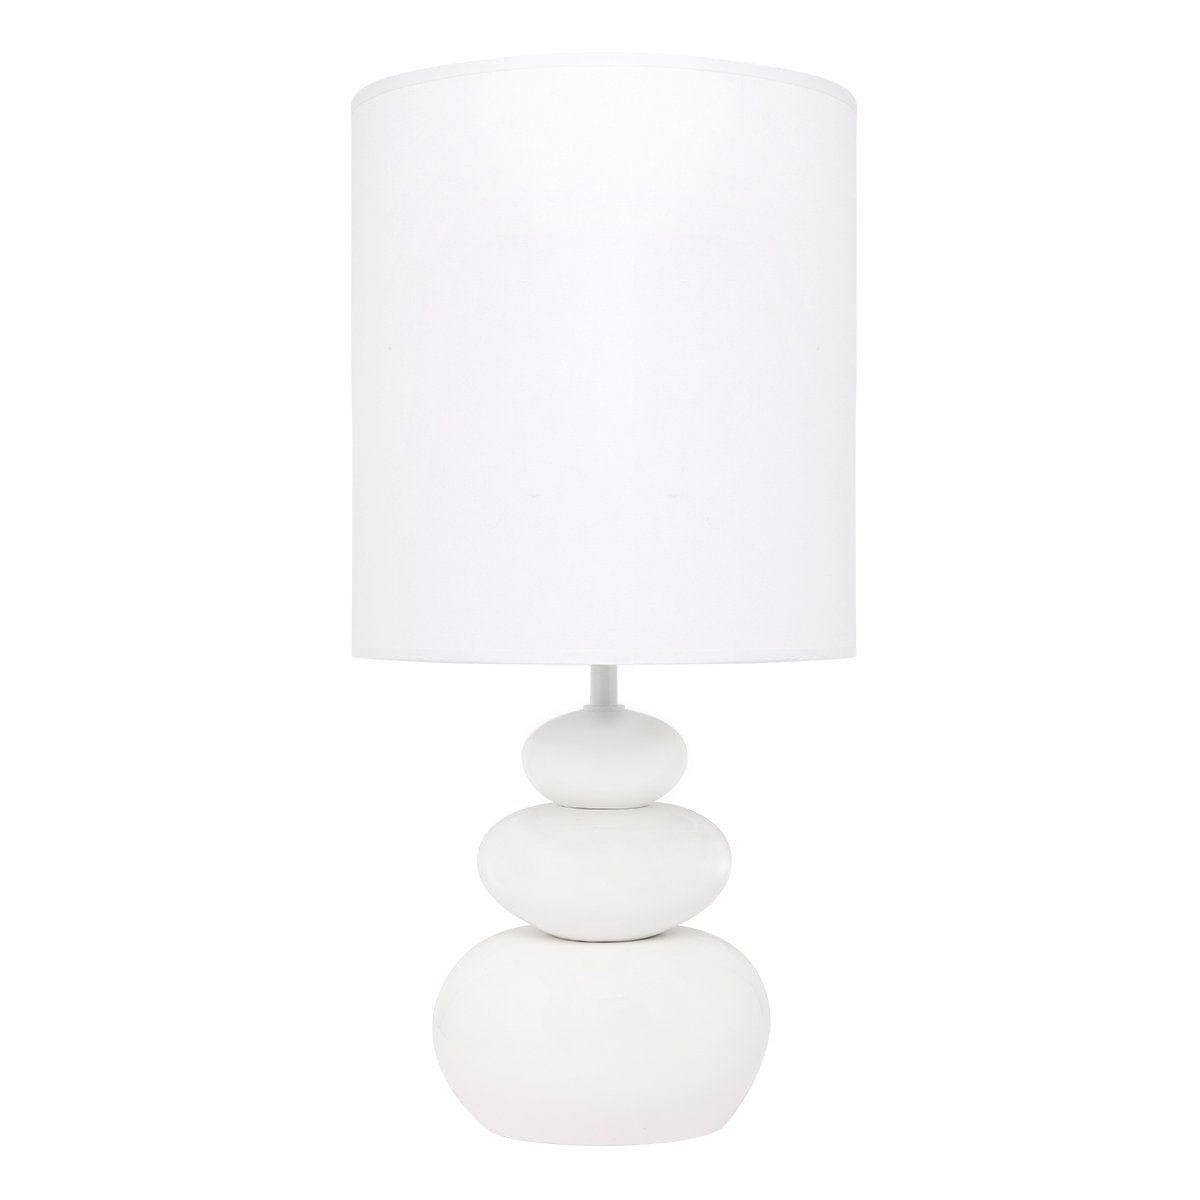 CAFE LIGHTING & LIVING Table Lamp Koa Table Lamp - White Matt Ceramic 12231